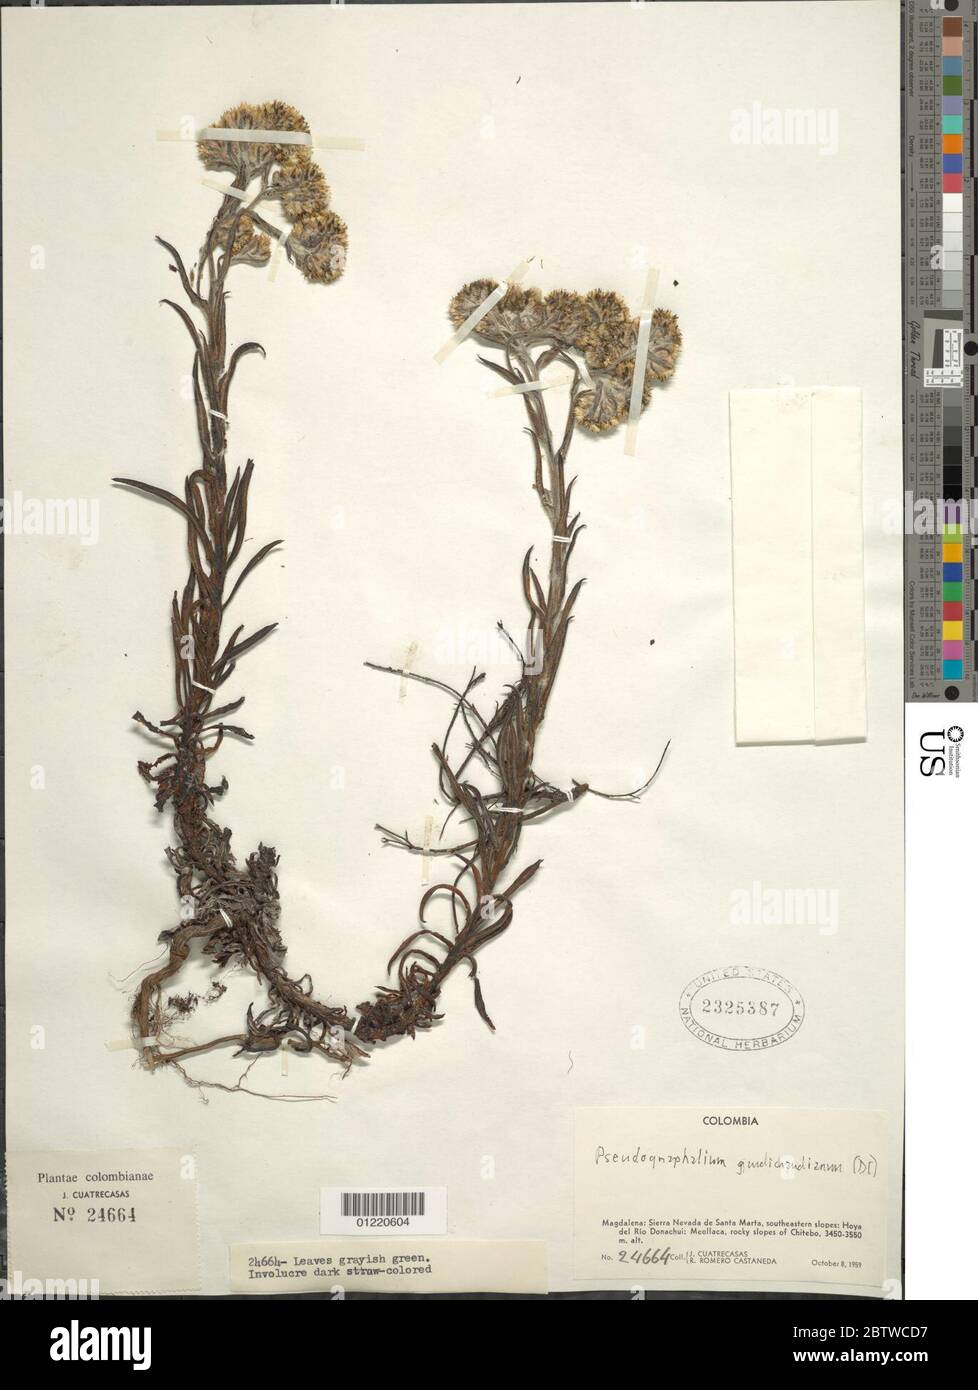 Pseudognaphalium gaudichaudianum DC Anderb. Stock Photo